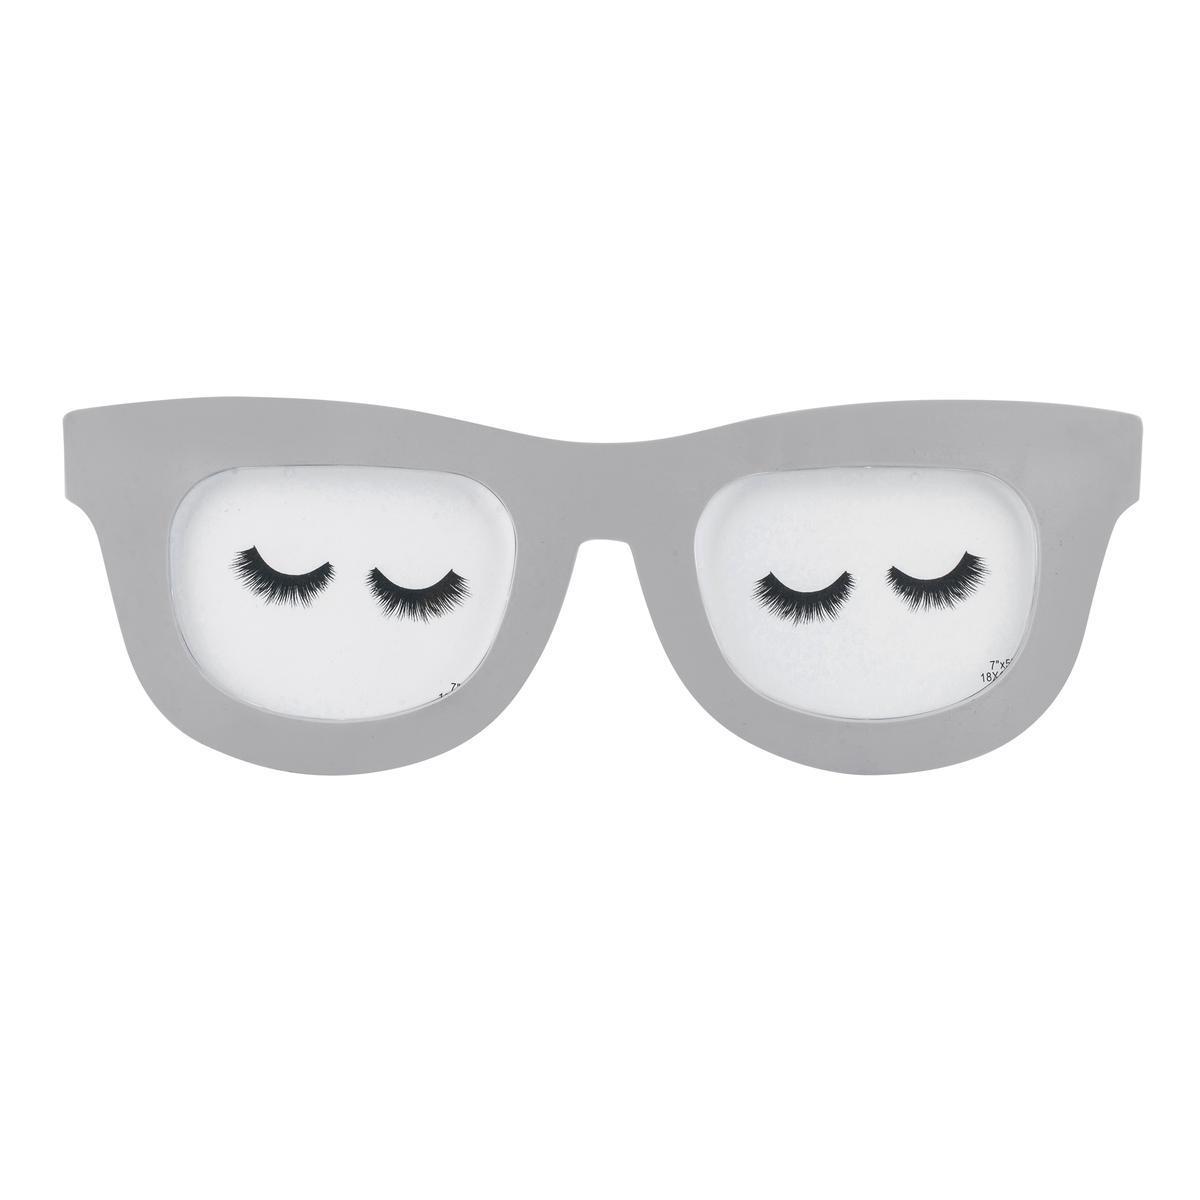 Porte-photos lunettes - 50 x H 18 cm - Blanc ou gris